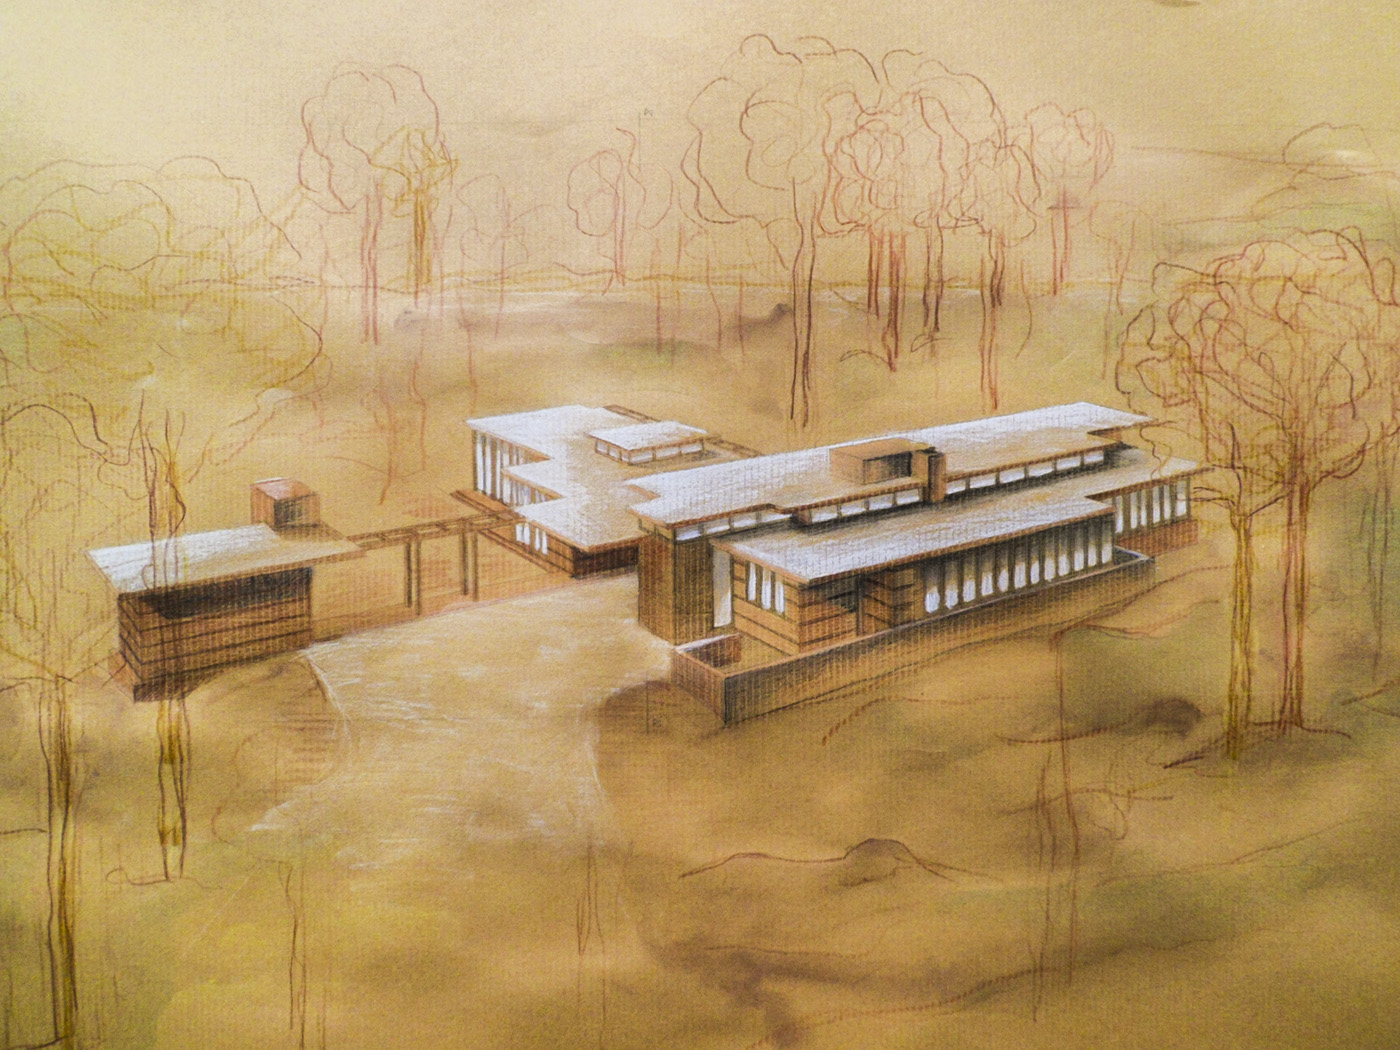 Frank Lloyd Wright Christie Residence Acquerelli disegno tecnico assonometria prospetti pianta architecture Drawing  watercolor